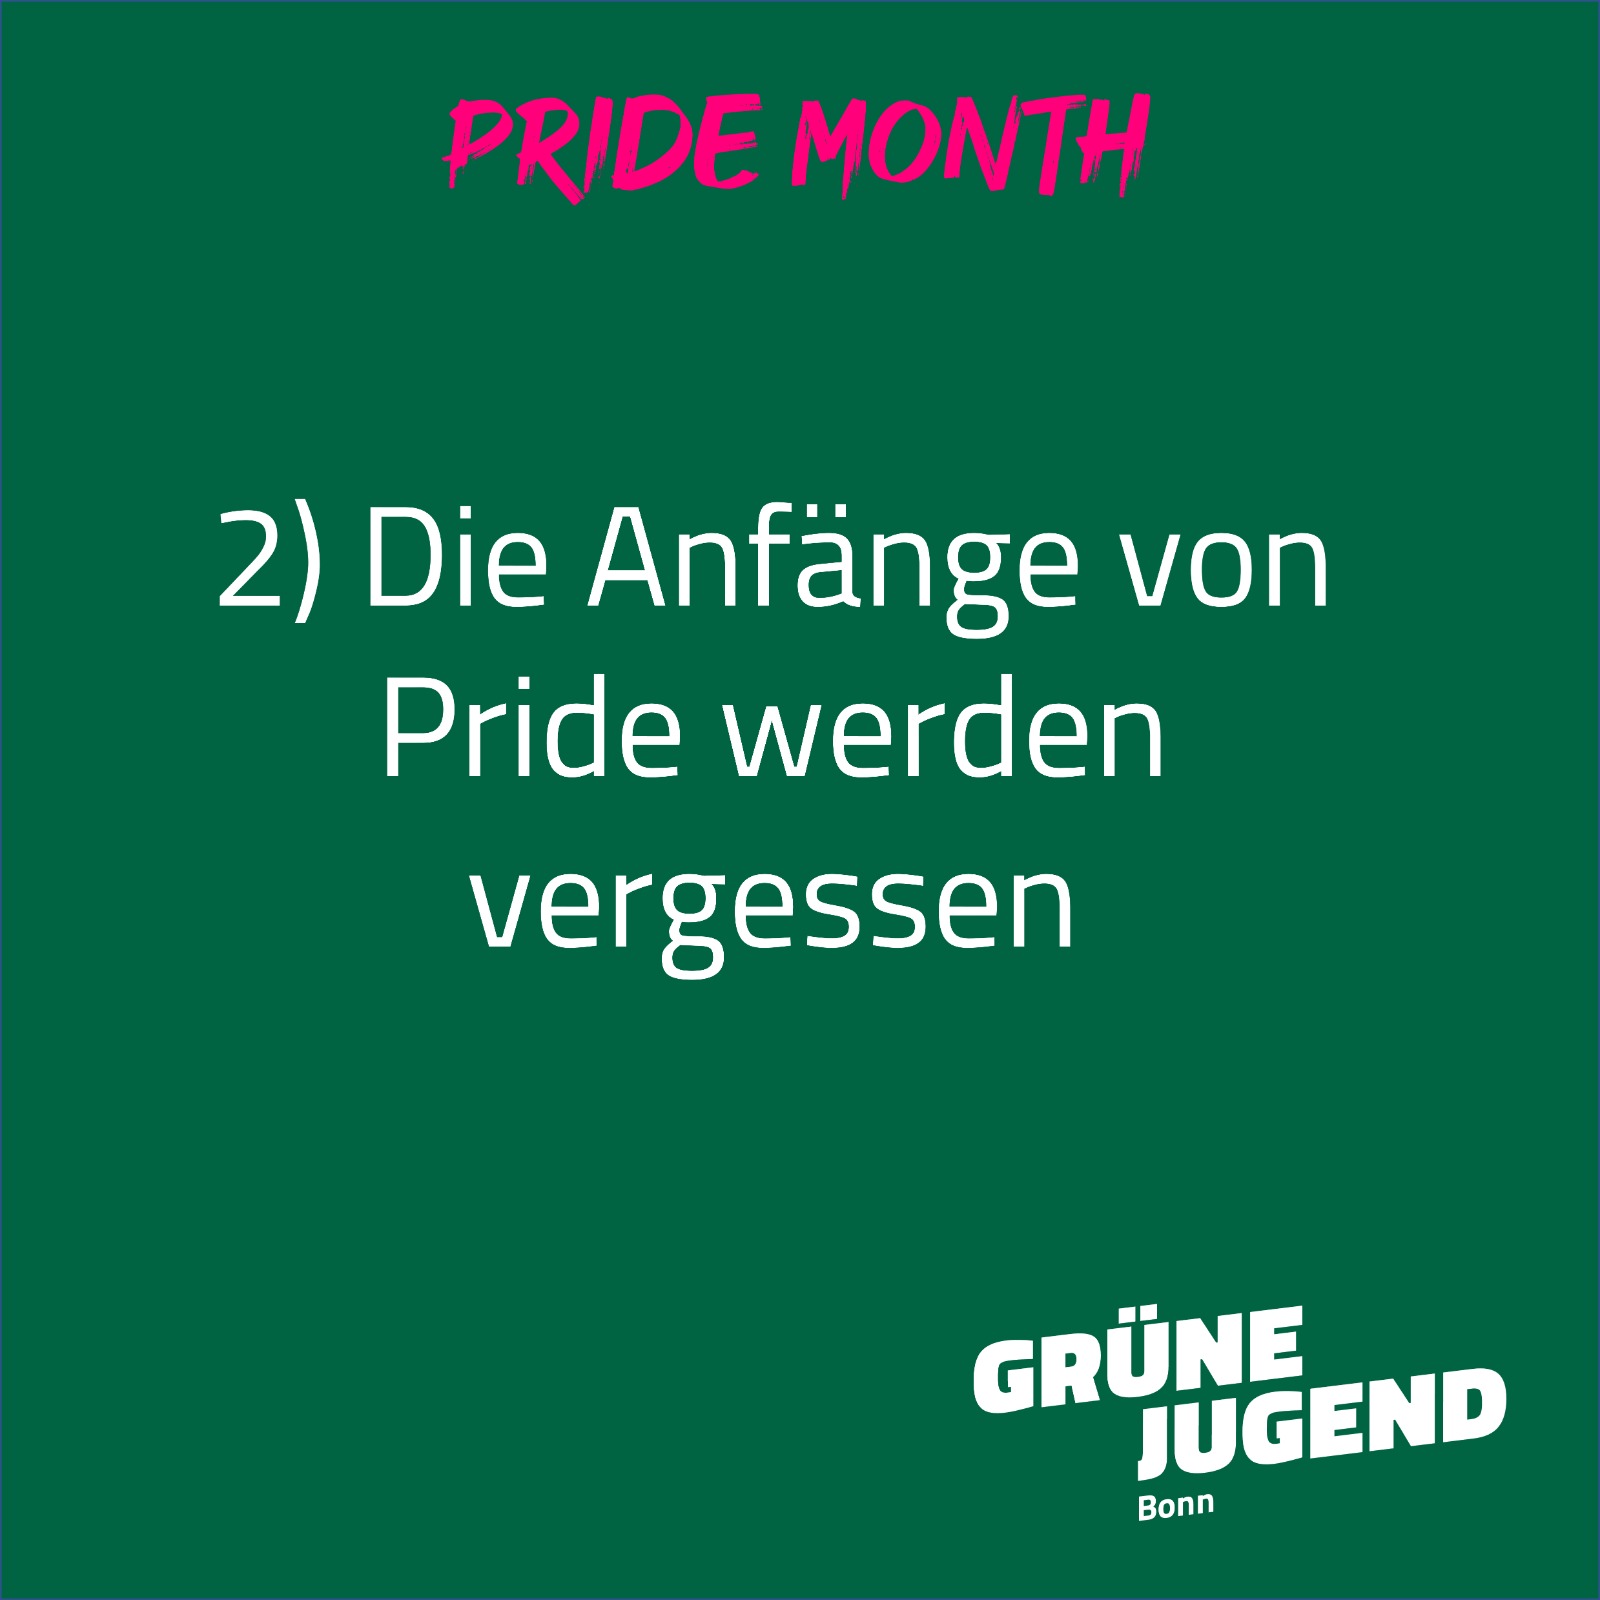 Die Überschrift ist "Pride Month". Darunter steht: "2) Die Anfänge von Pride werden vergessen"